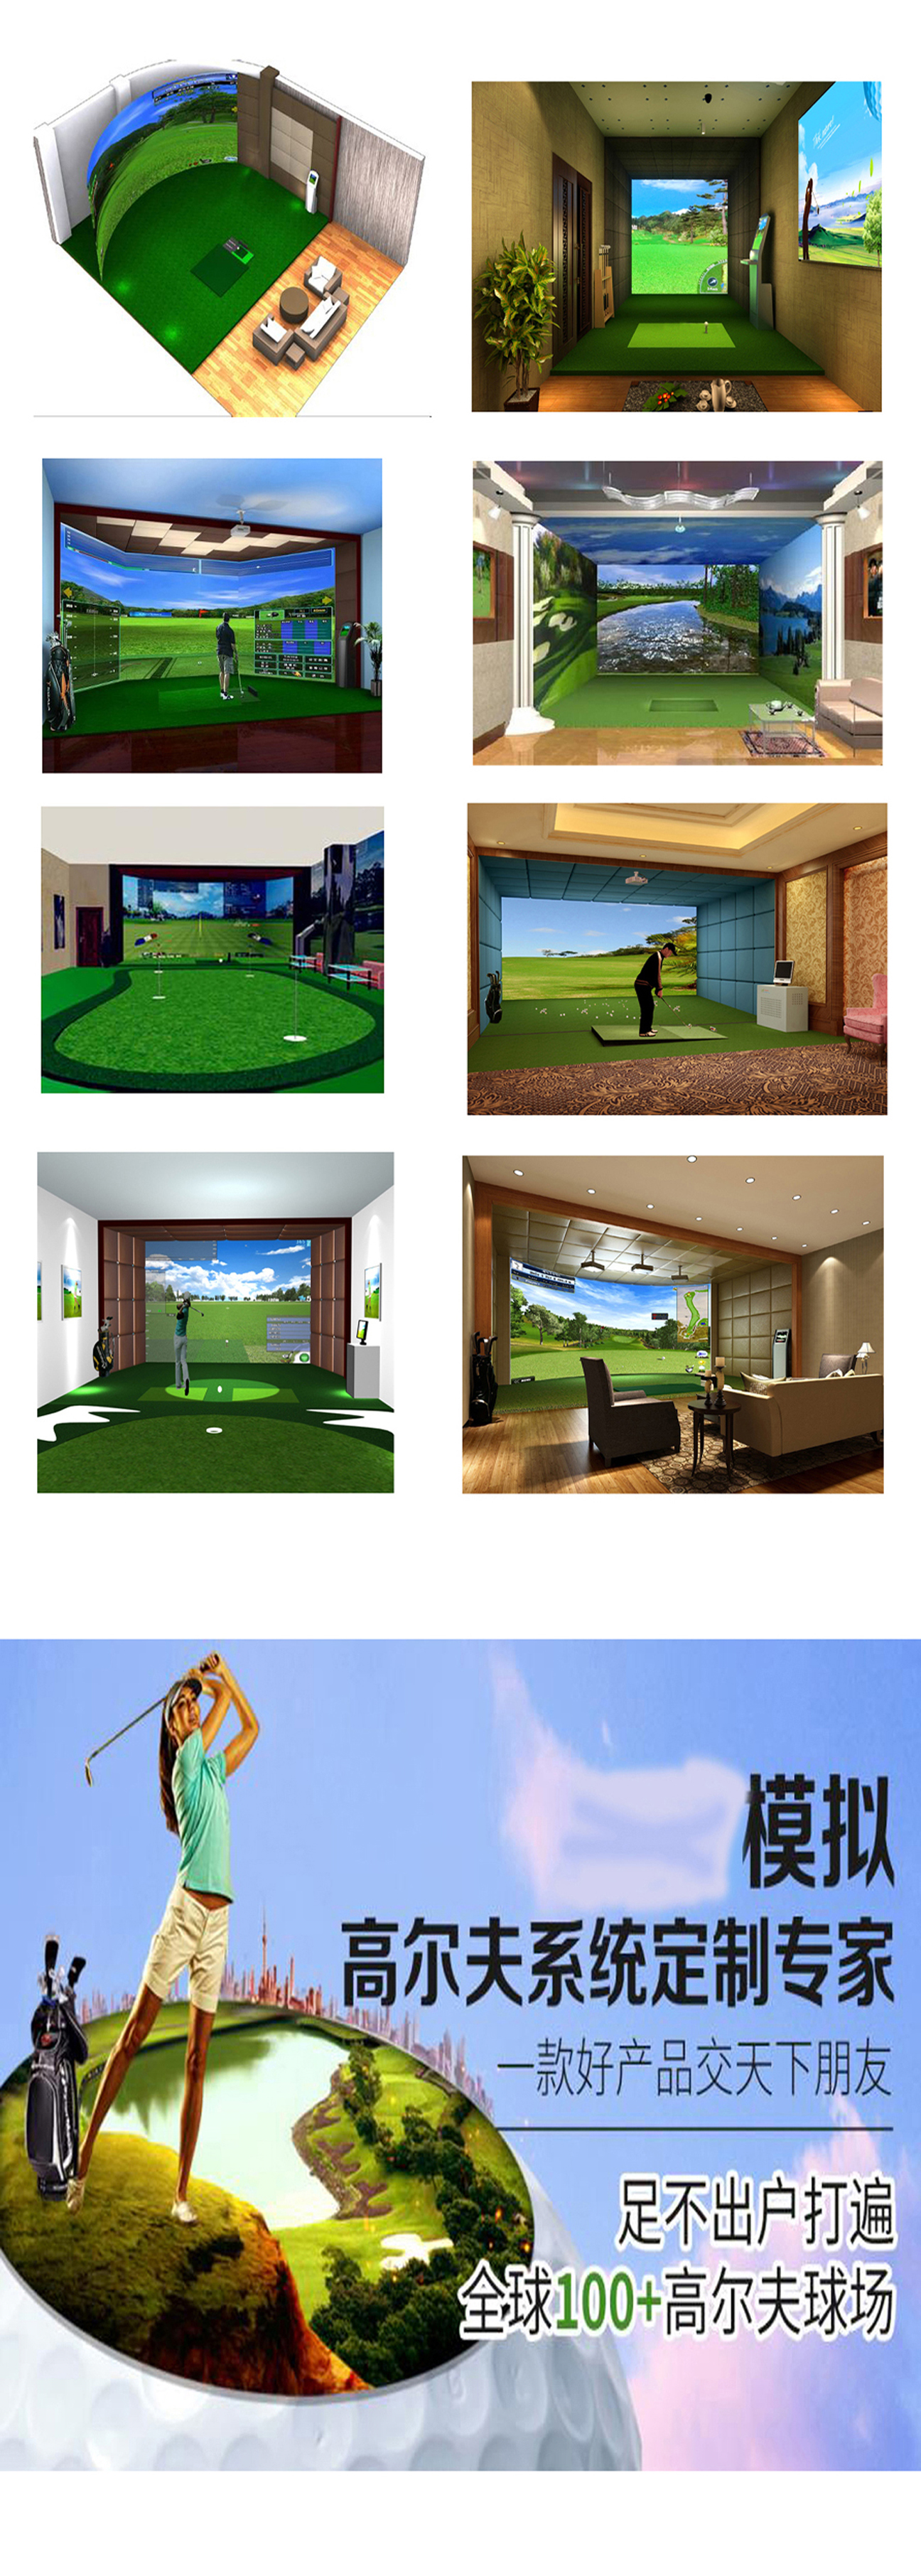 模拟室内高尔夫球场实例 3.jpg